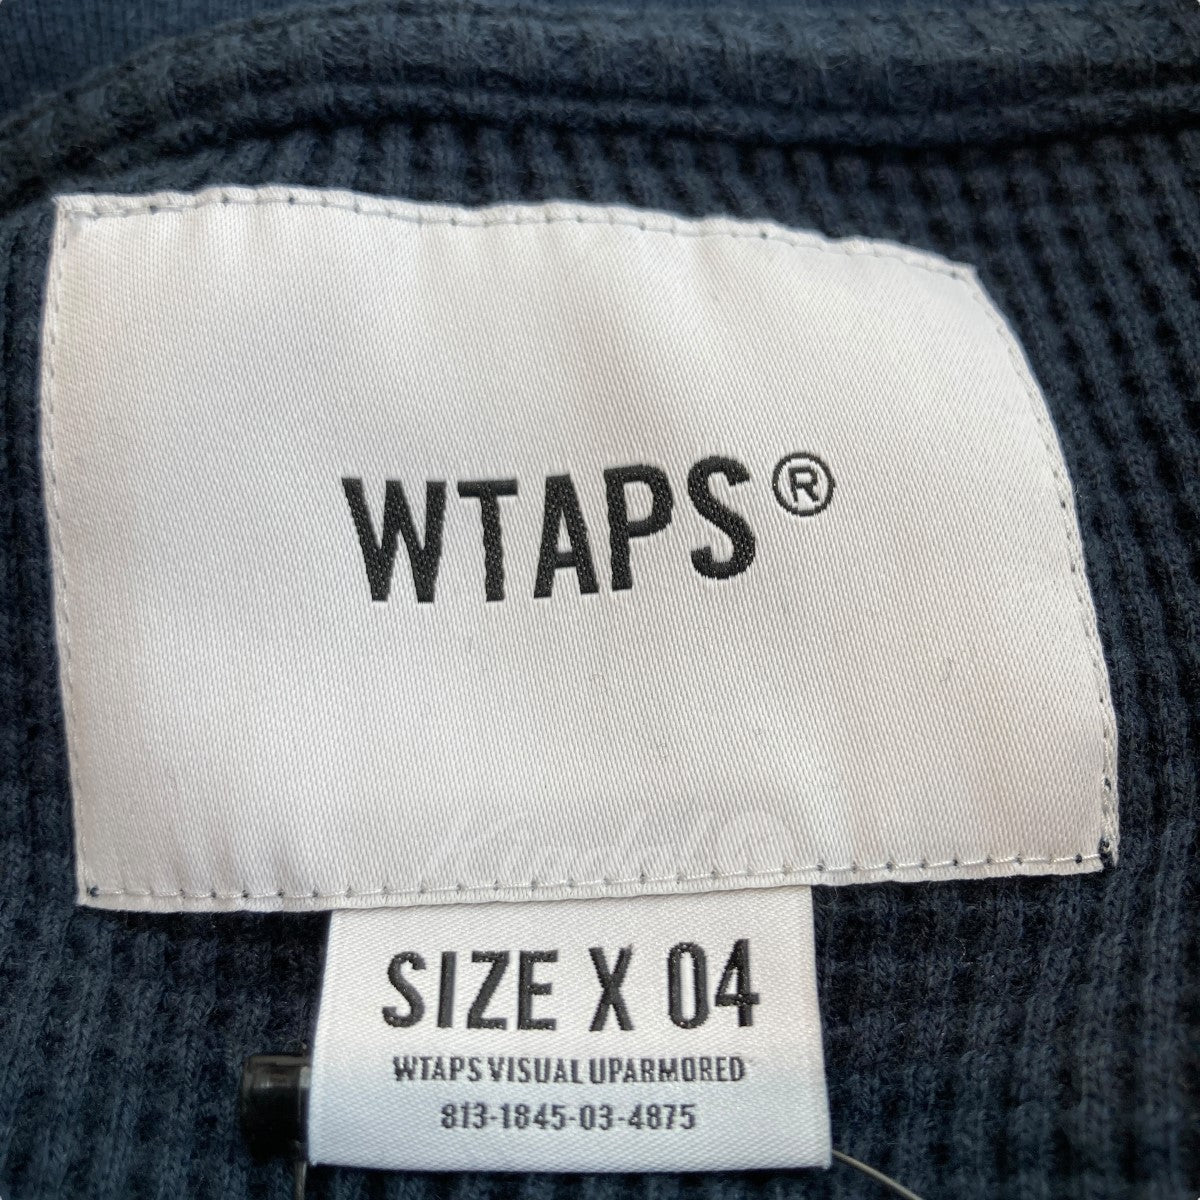 WTAPS(ダブルタップス) WAFFLE LS COPO ロングスリーブTシャツ 211atdt ...